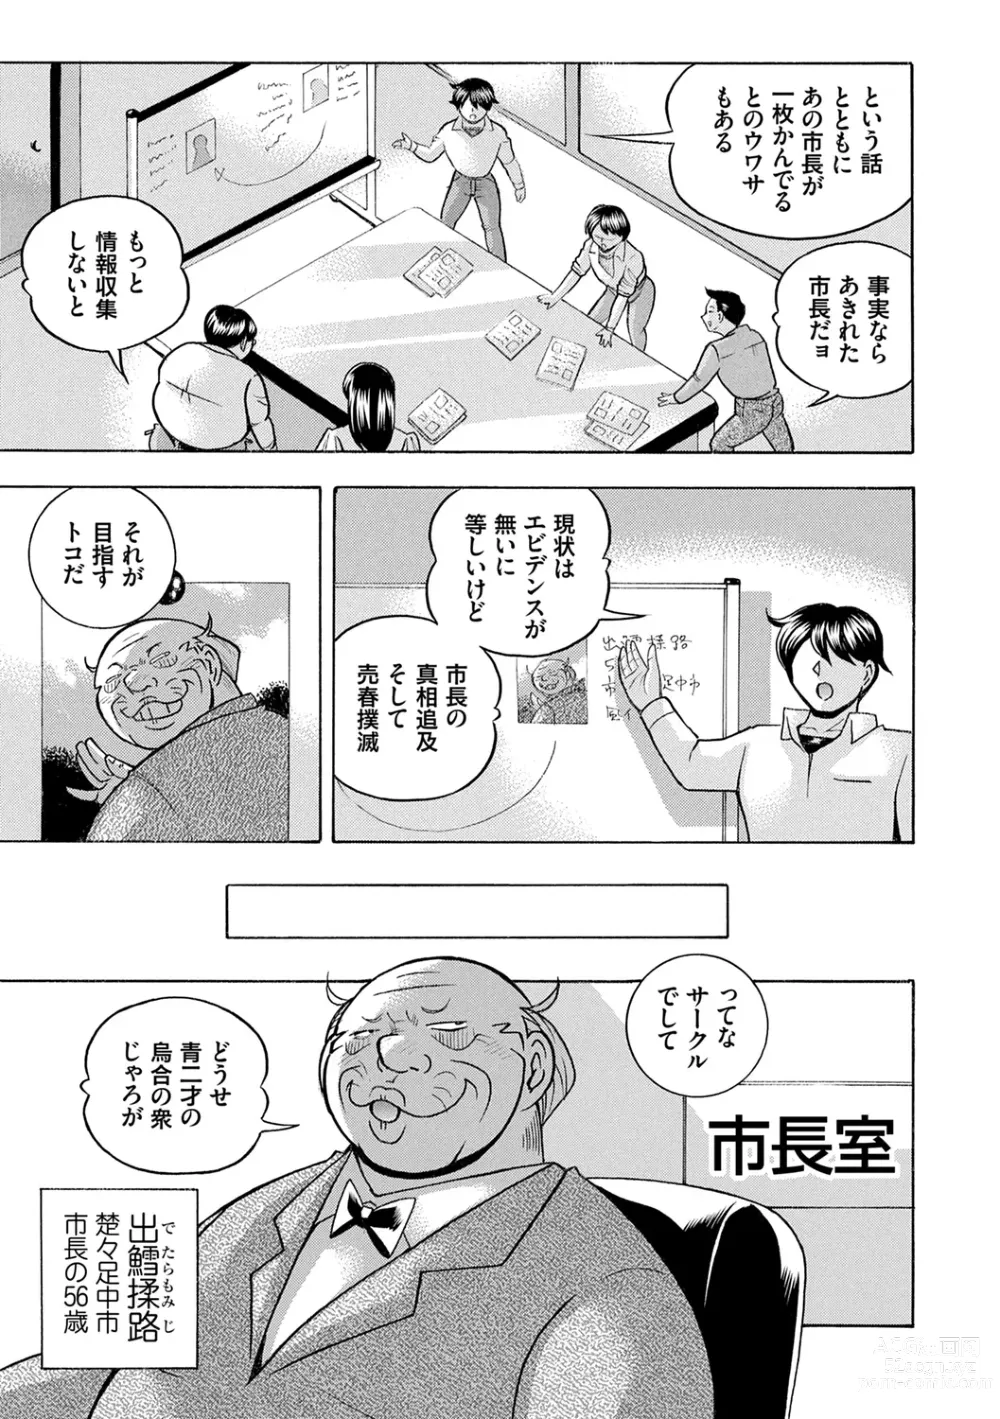 Page 7 of manga Joshidaisei Yuuka